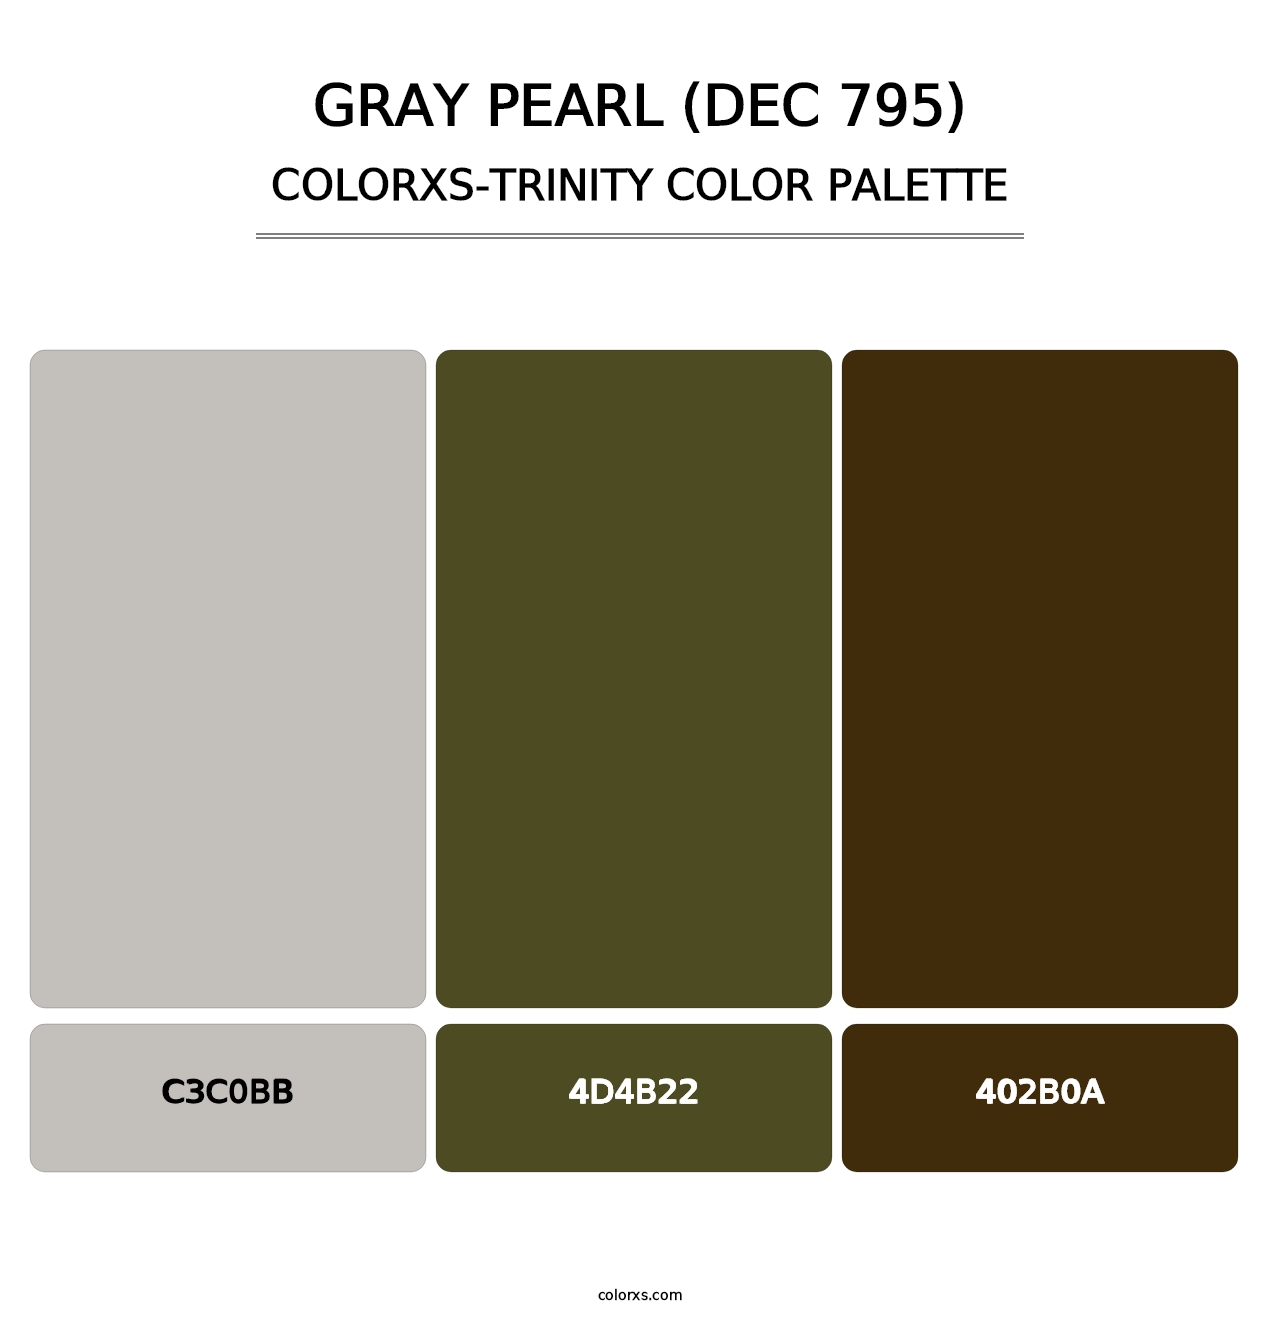 Gray Pearl (DEC 795) - Colorxs Trinity Palette